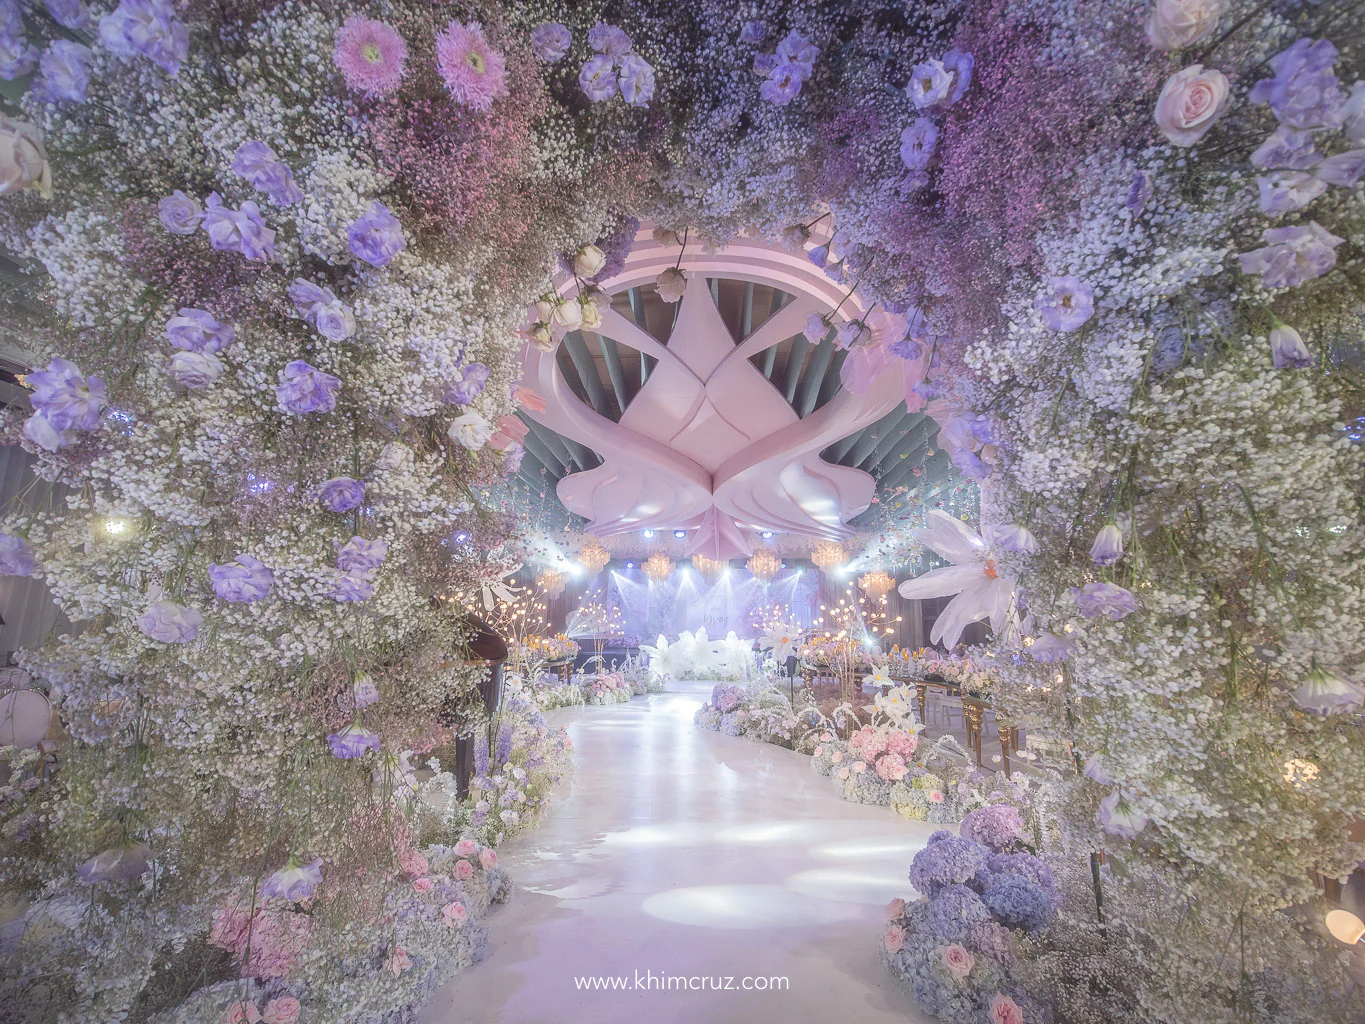 a dreamy floral arch at a garden themed wedding reception by Khim Cruz